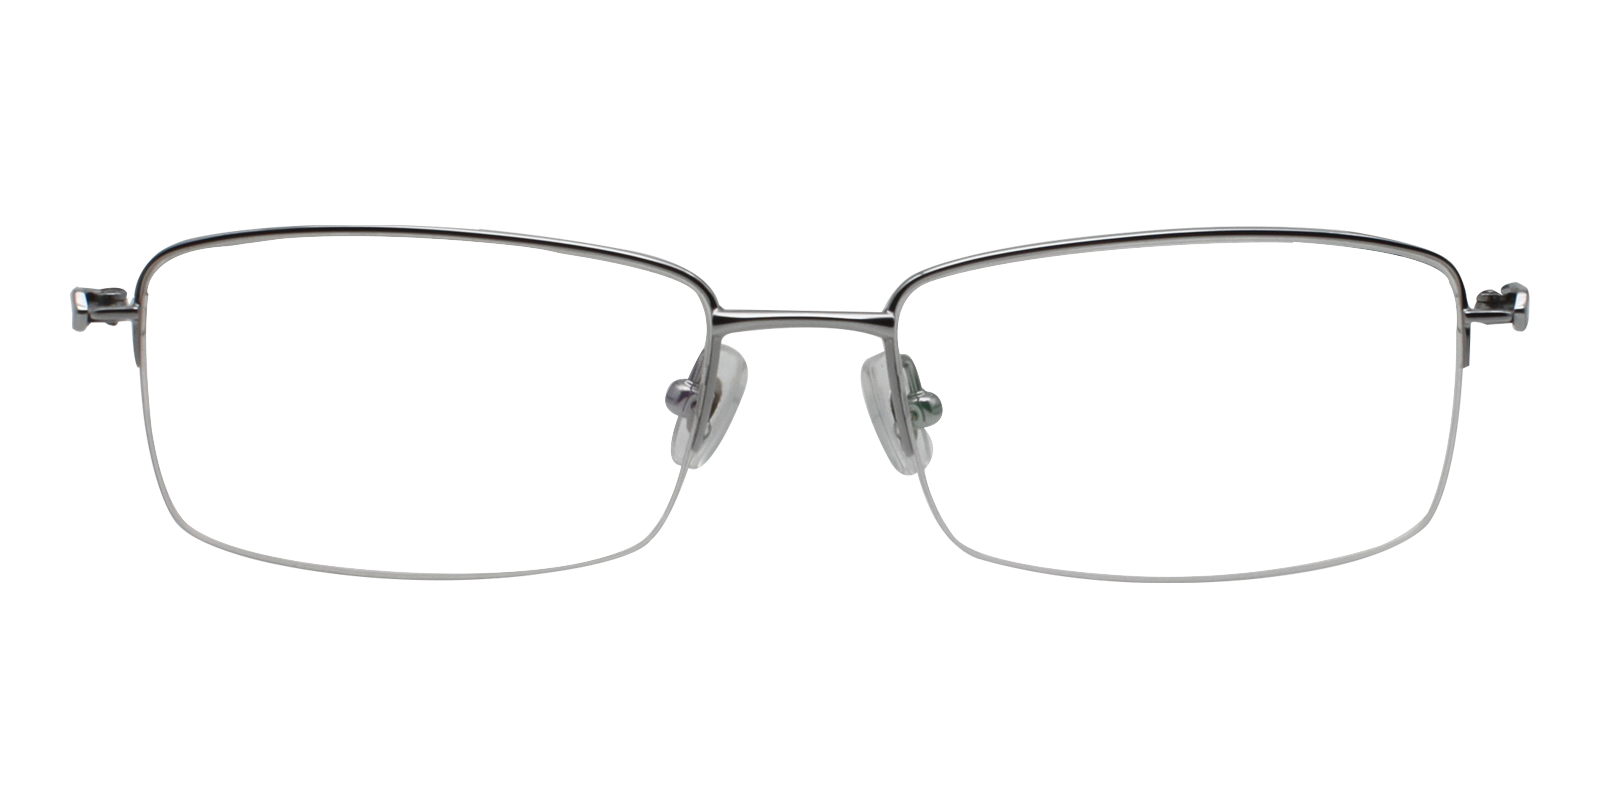 Oliv Rectangle Eyeglasses in Black - Sllac